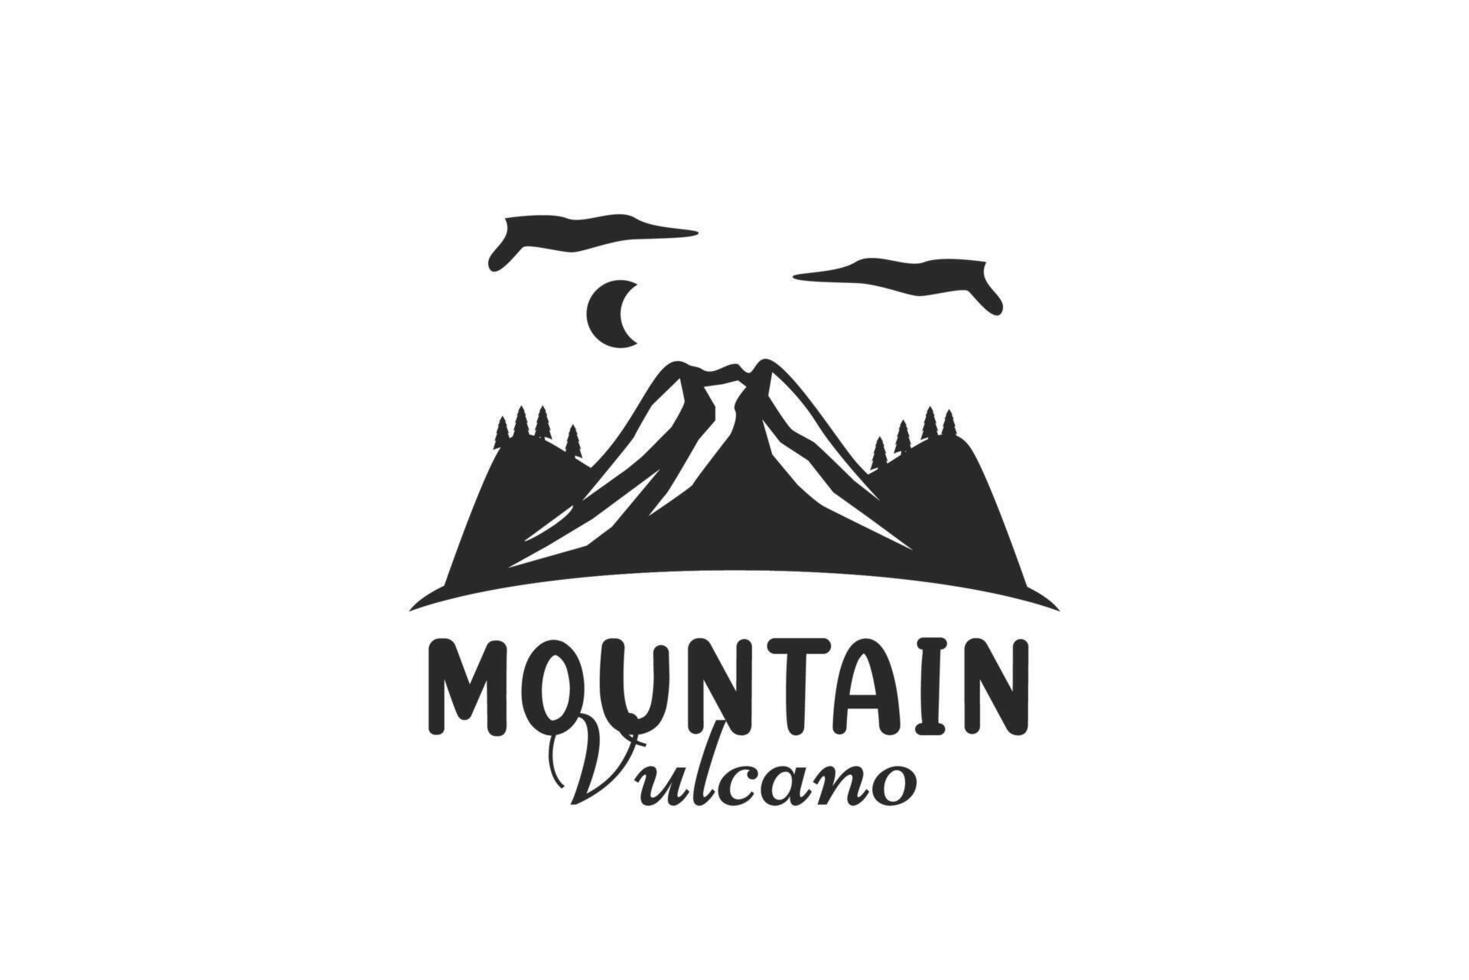 logo clásico montaña vulcano vector